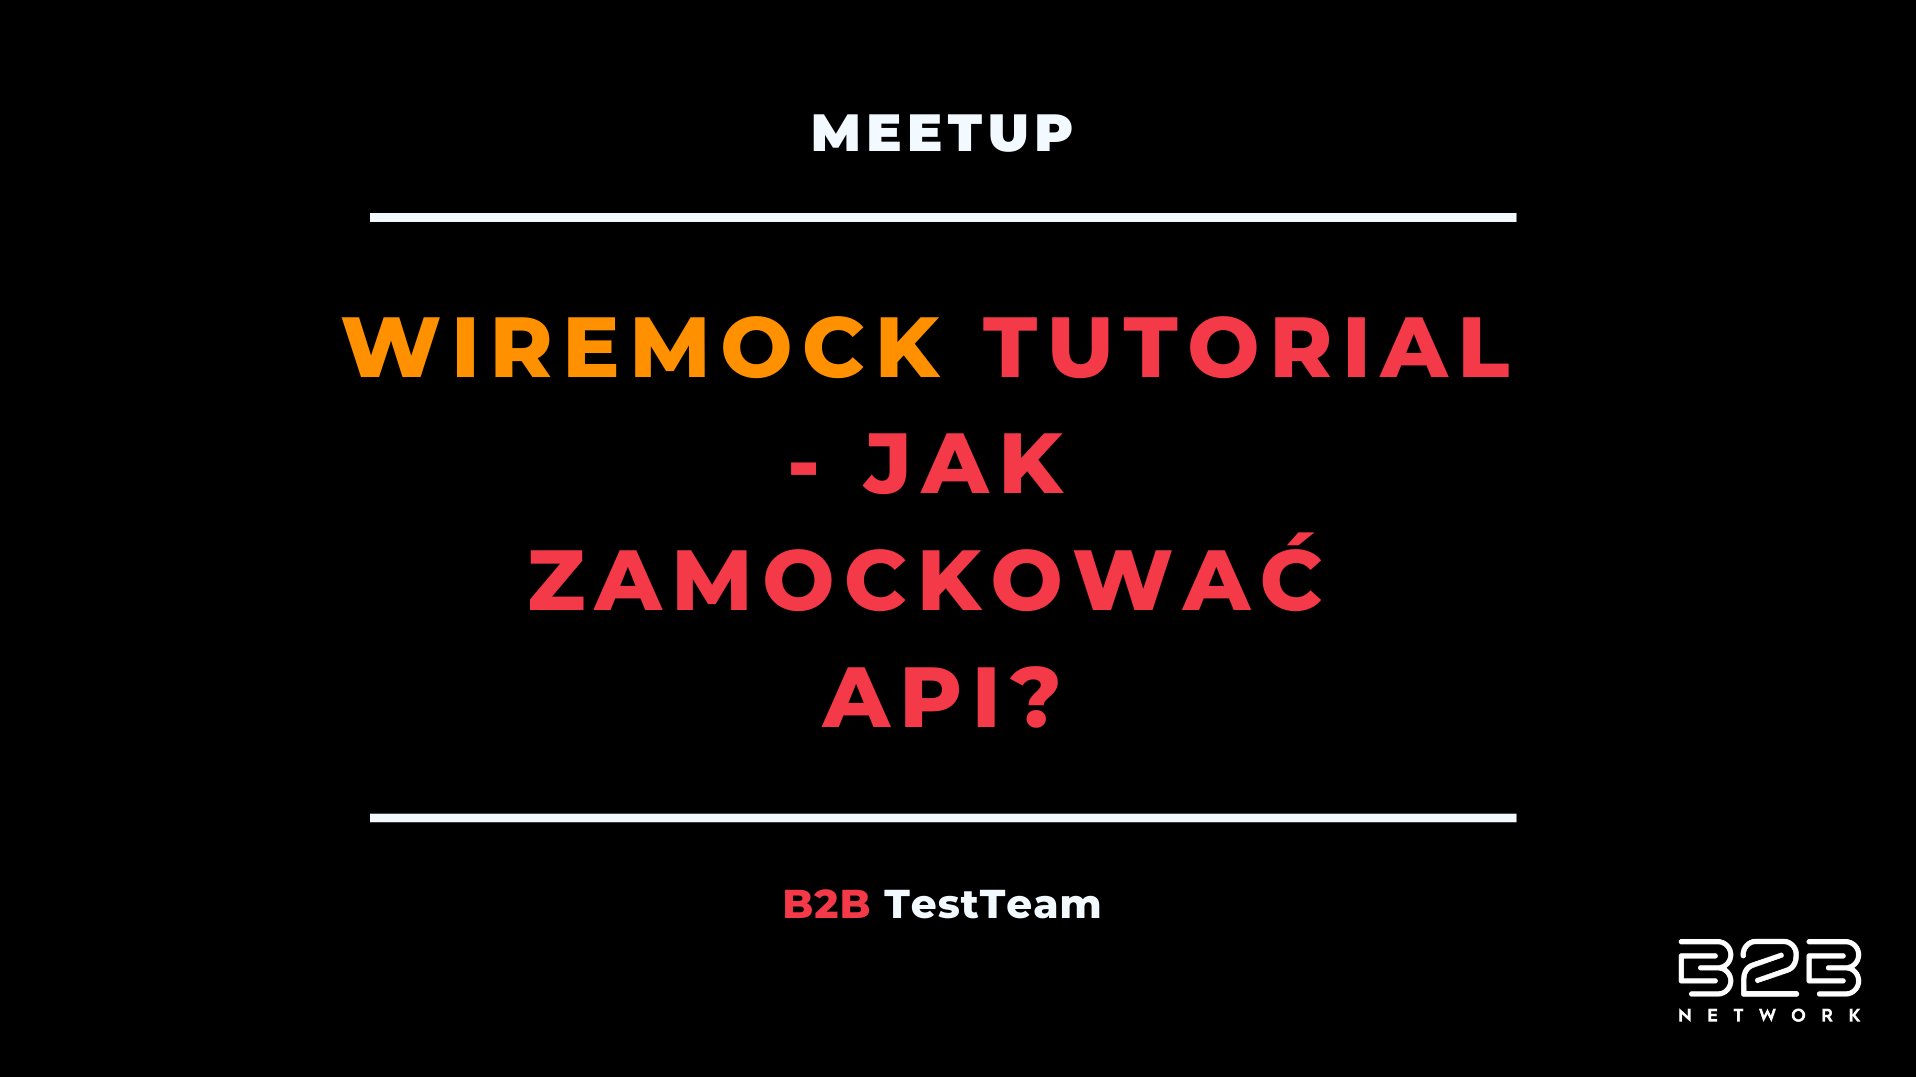 WireMock tutorial – Jak zamockować API?